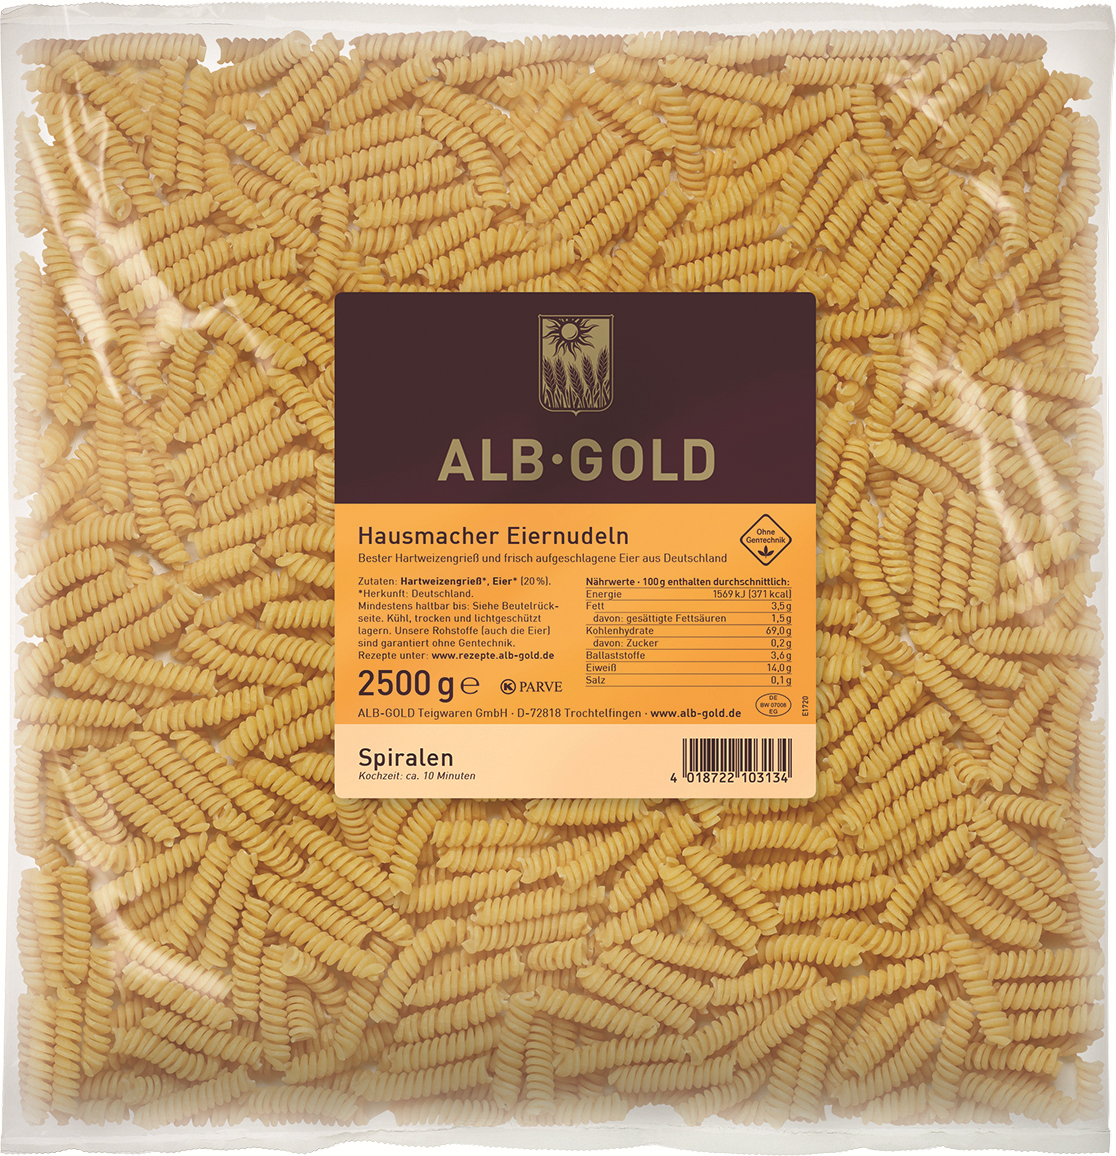 ALB-GOLD Fusilli